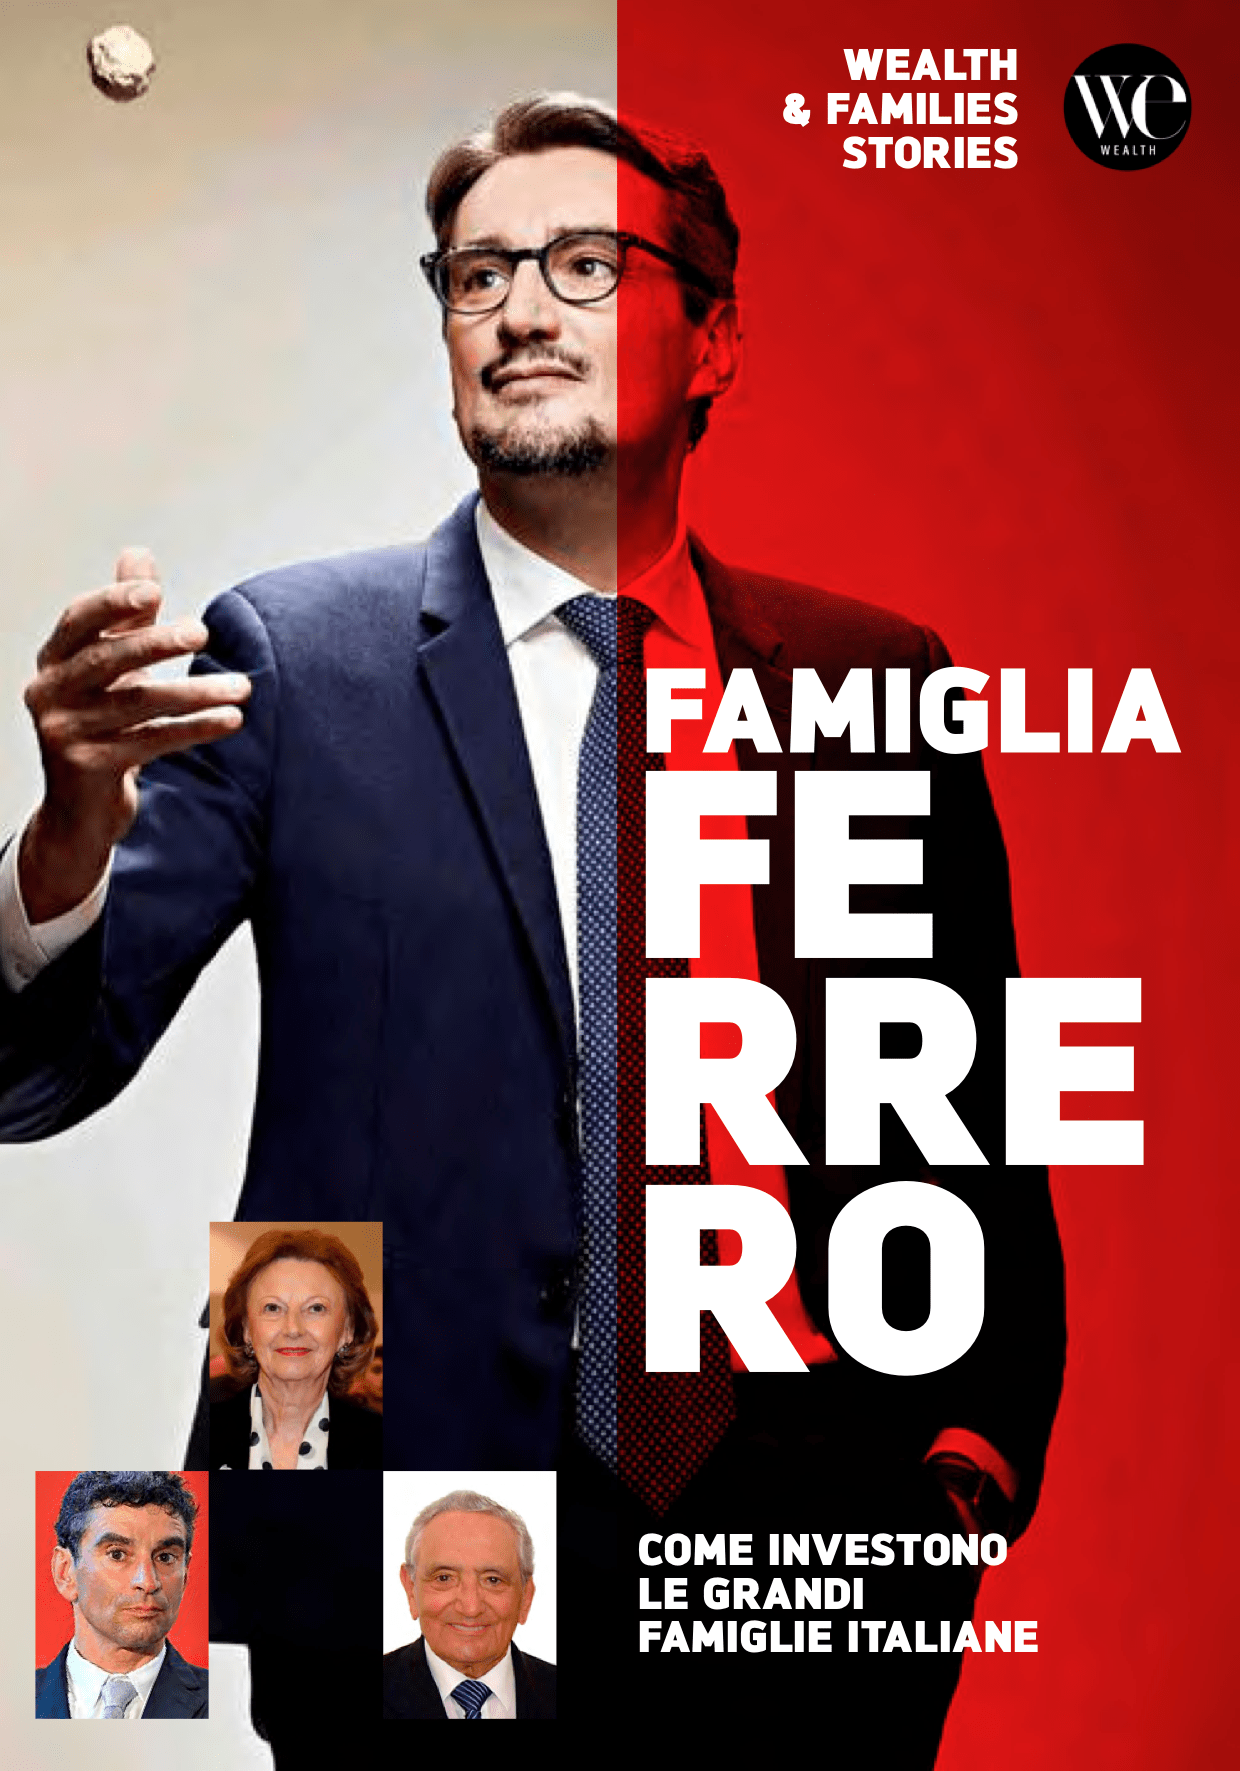 The Ferrero Family